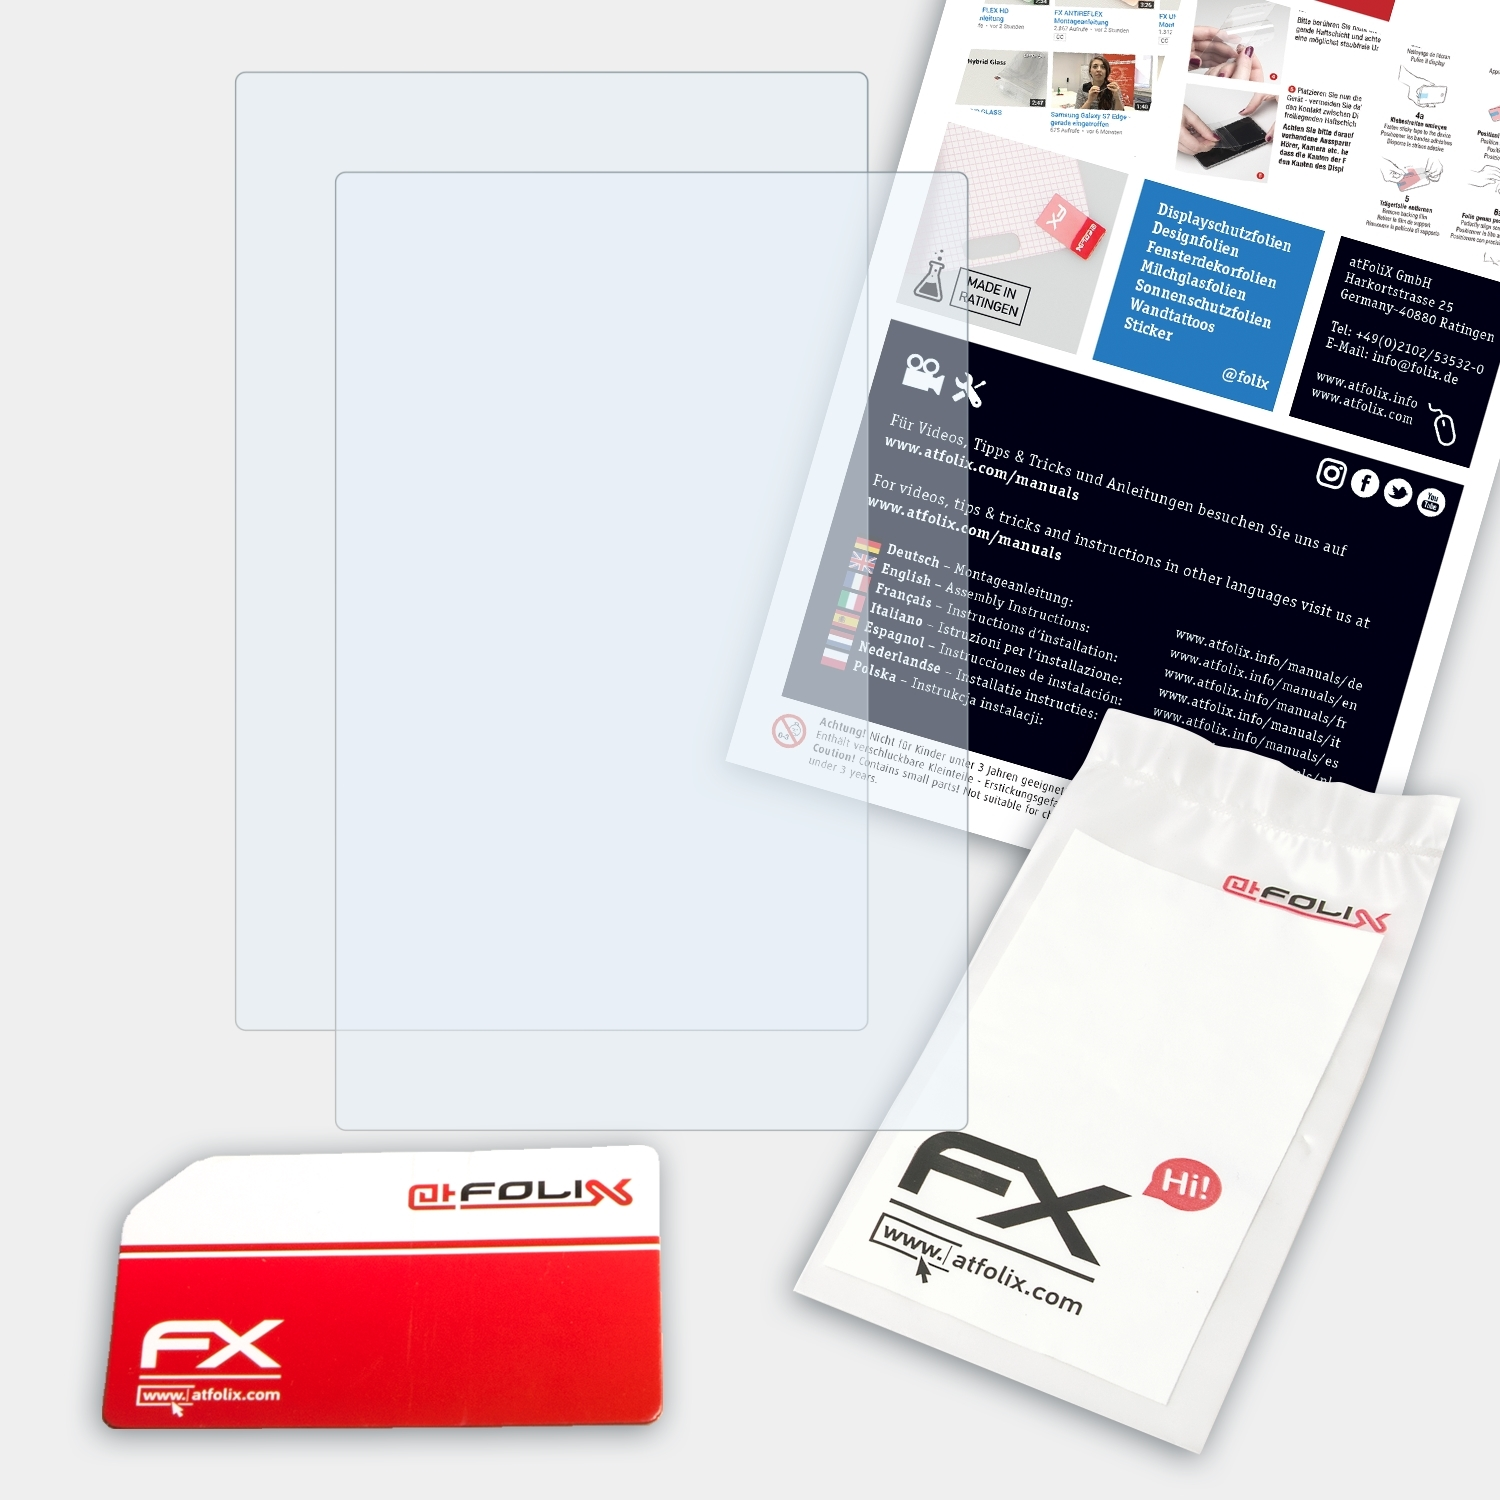 2x FX-Clear Algiz Handheld ATFOLIX 10X) Displayschutz(für